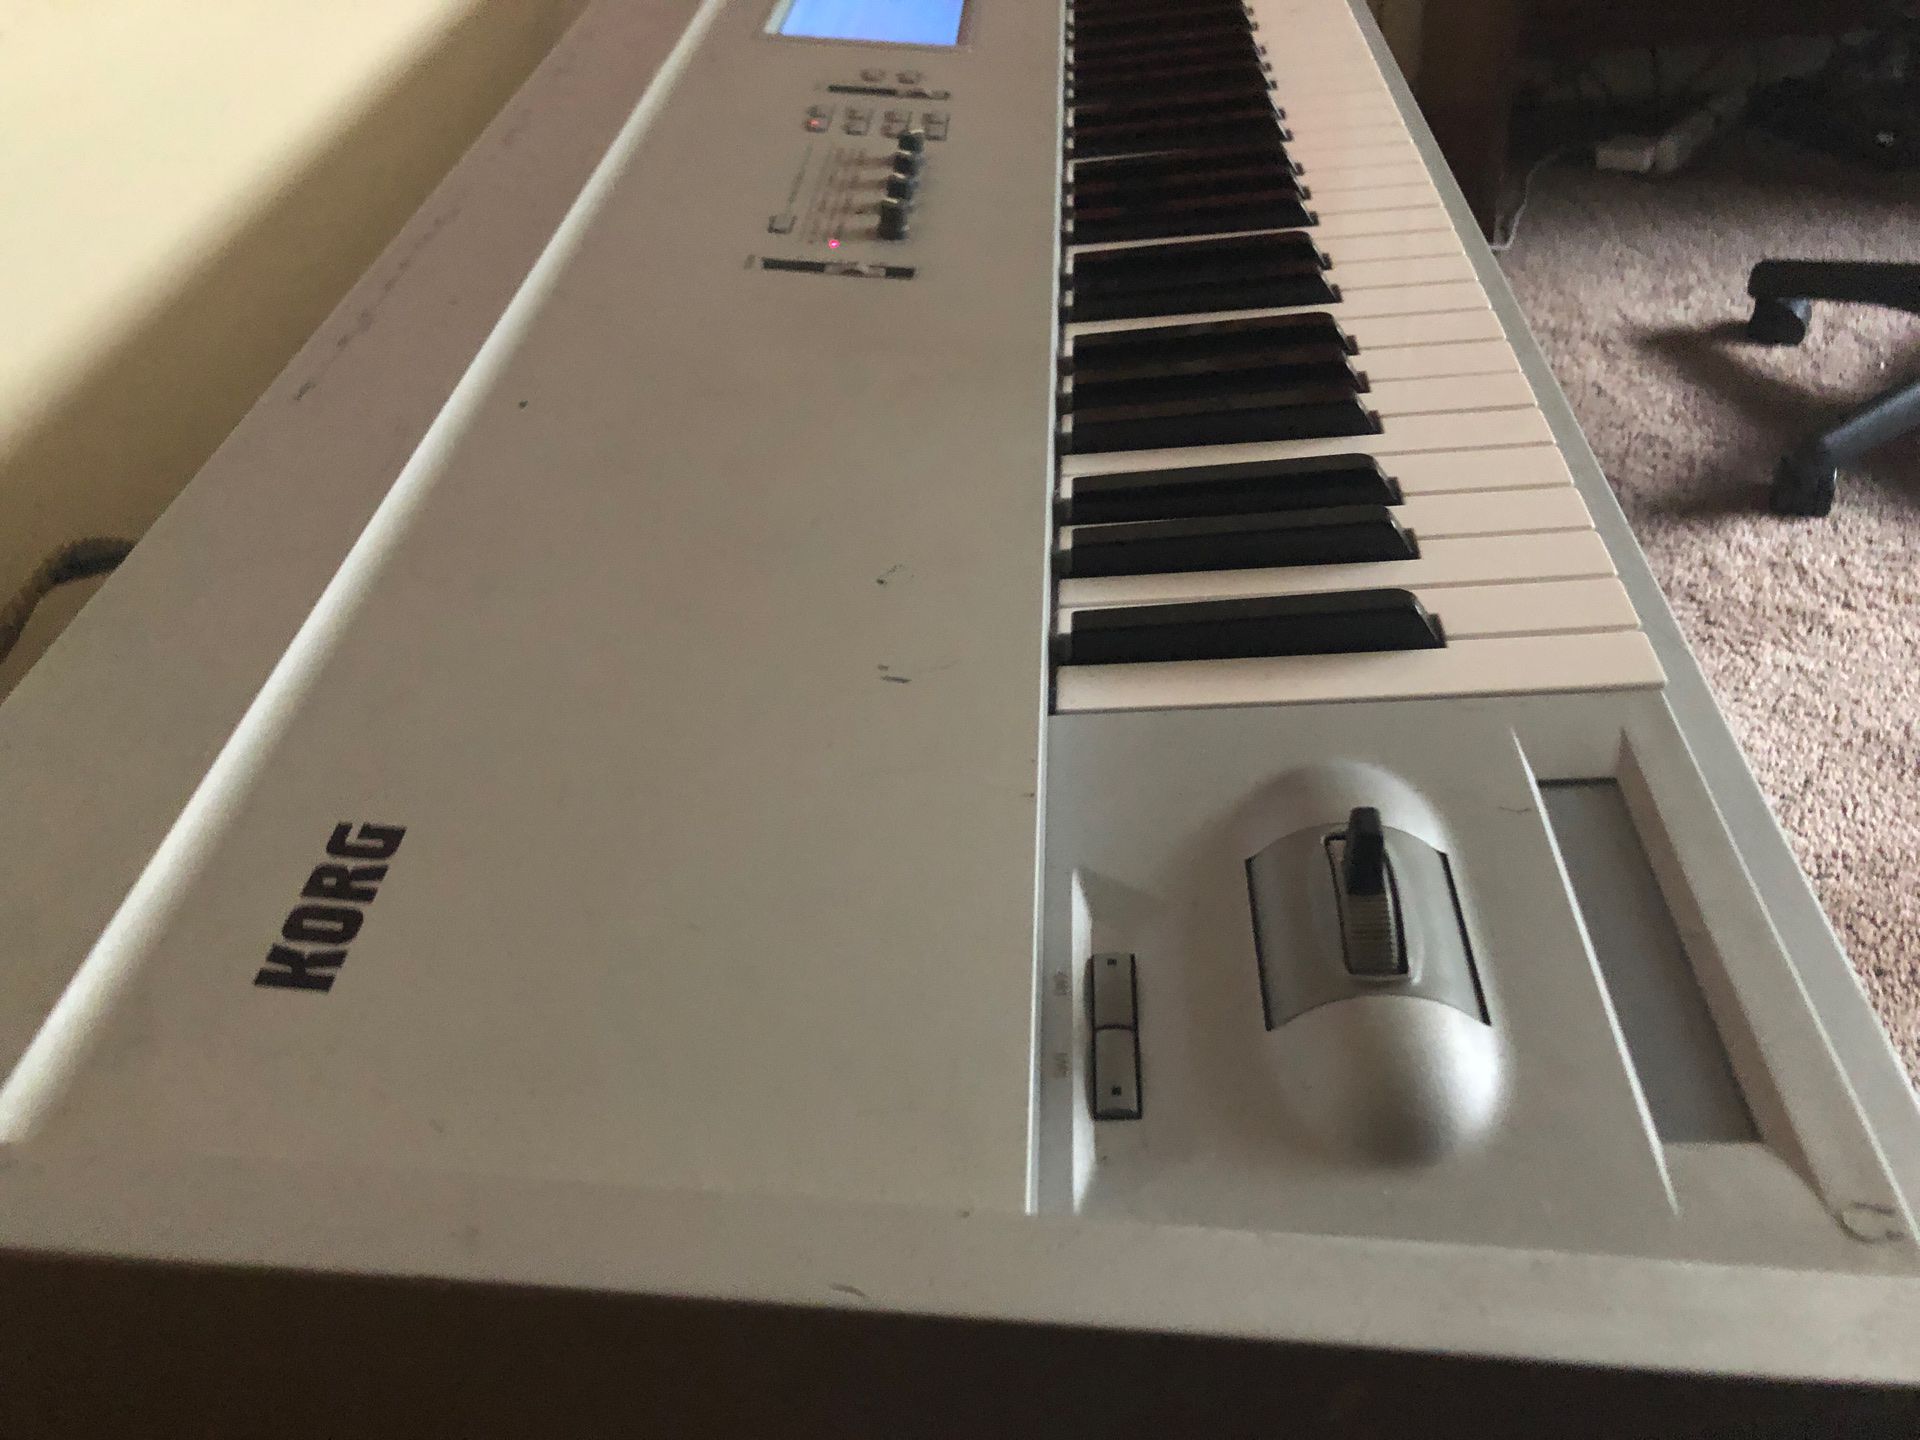 Korg Triton Pro X 88 key synthesizer